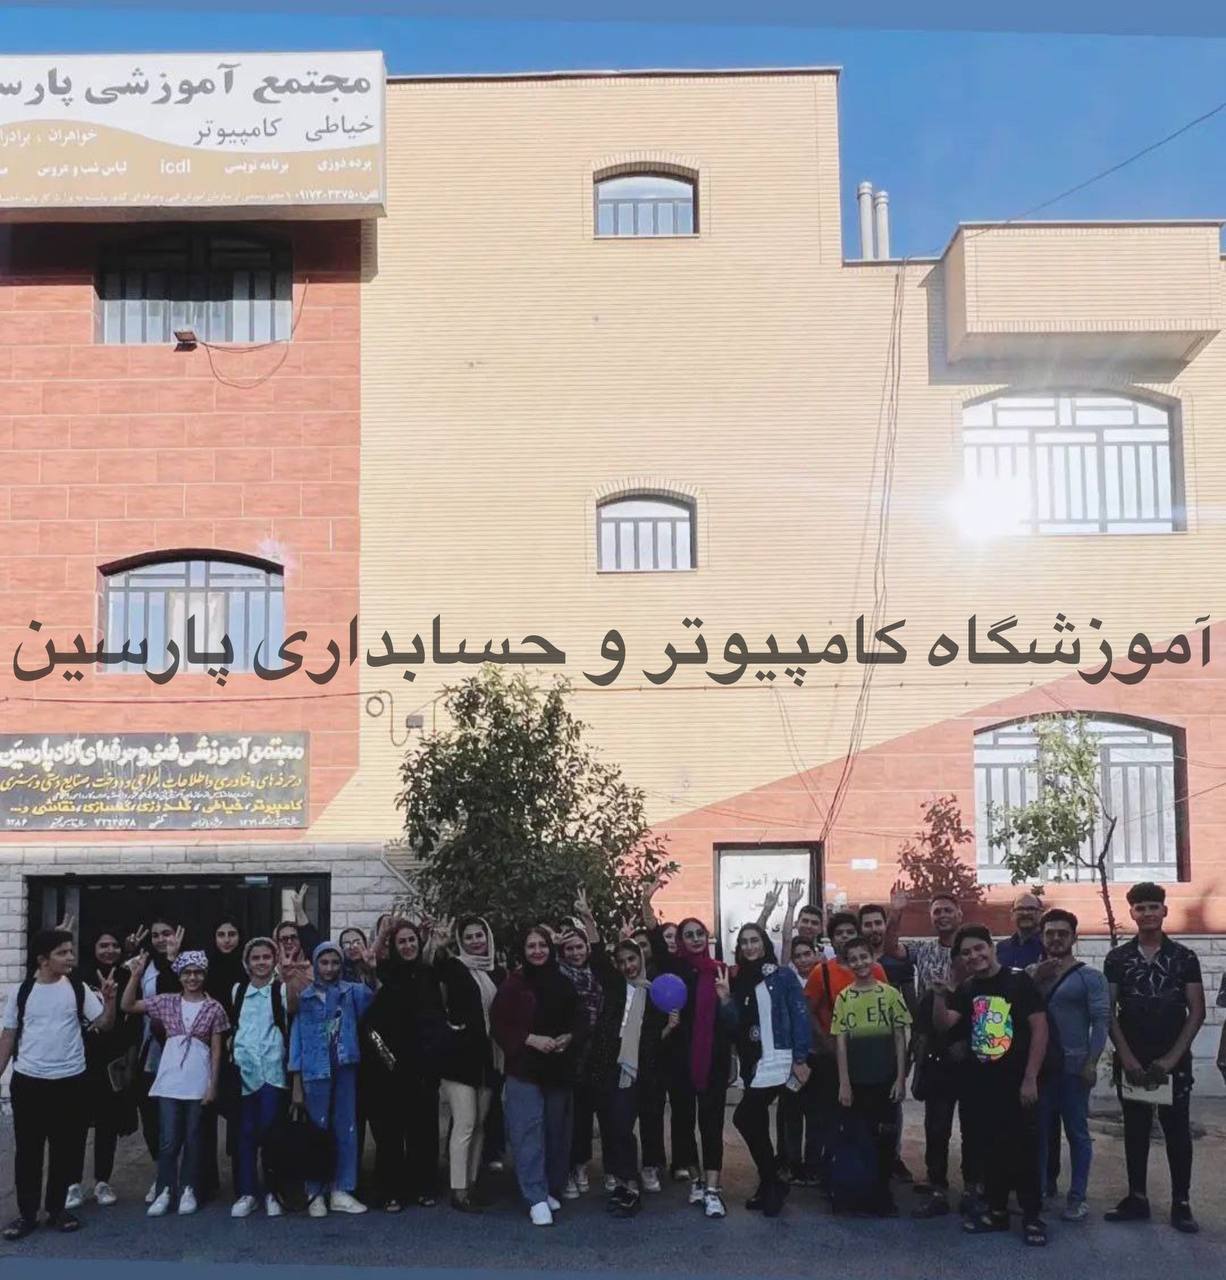 آموزشگاه حسابداری پارسین شیراز